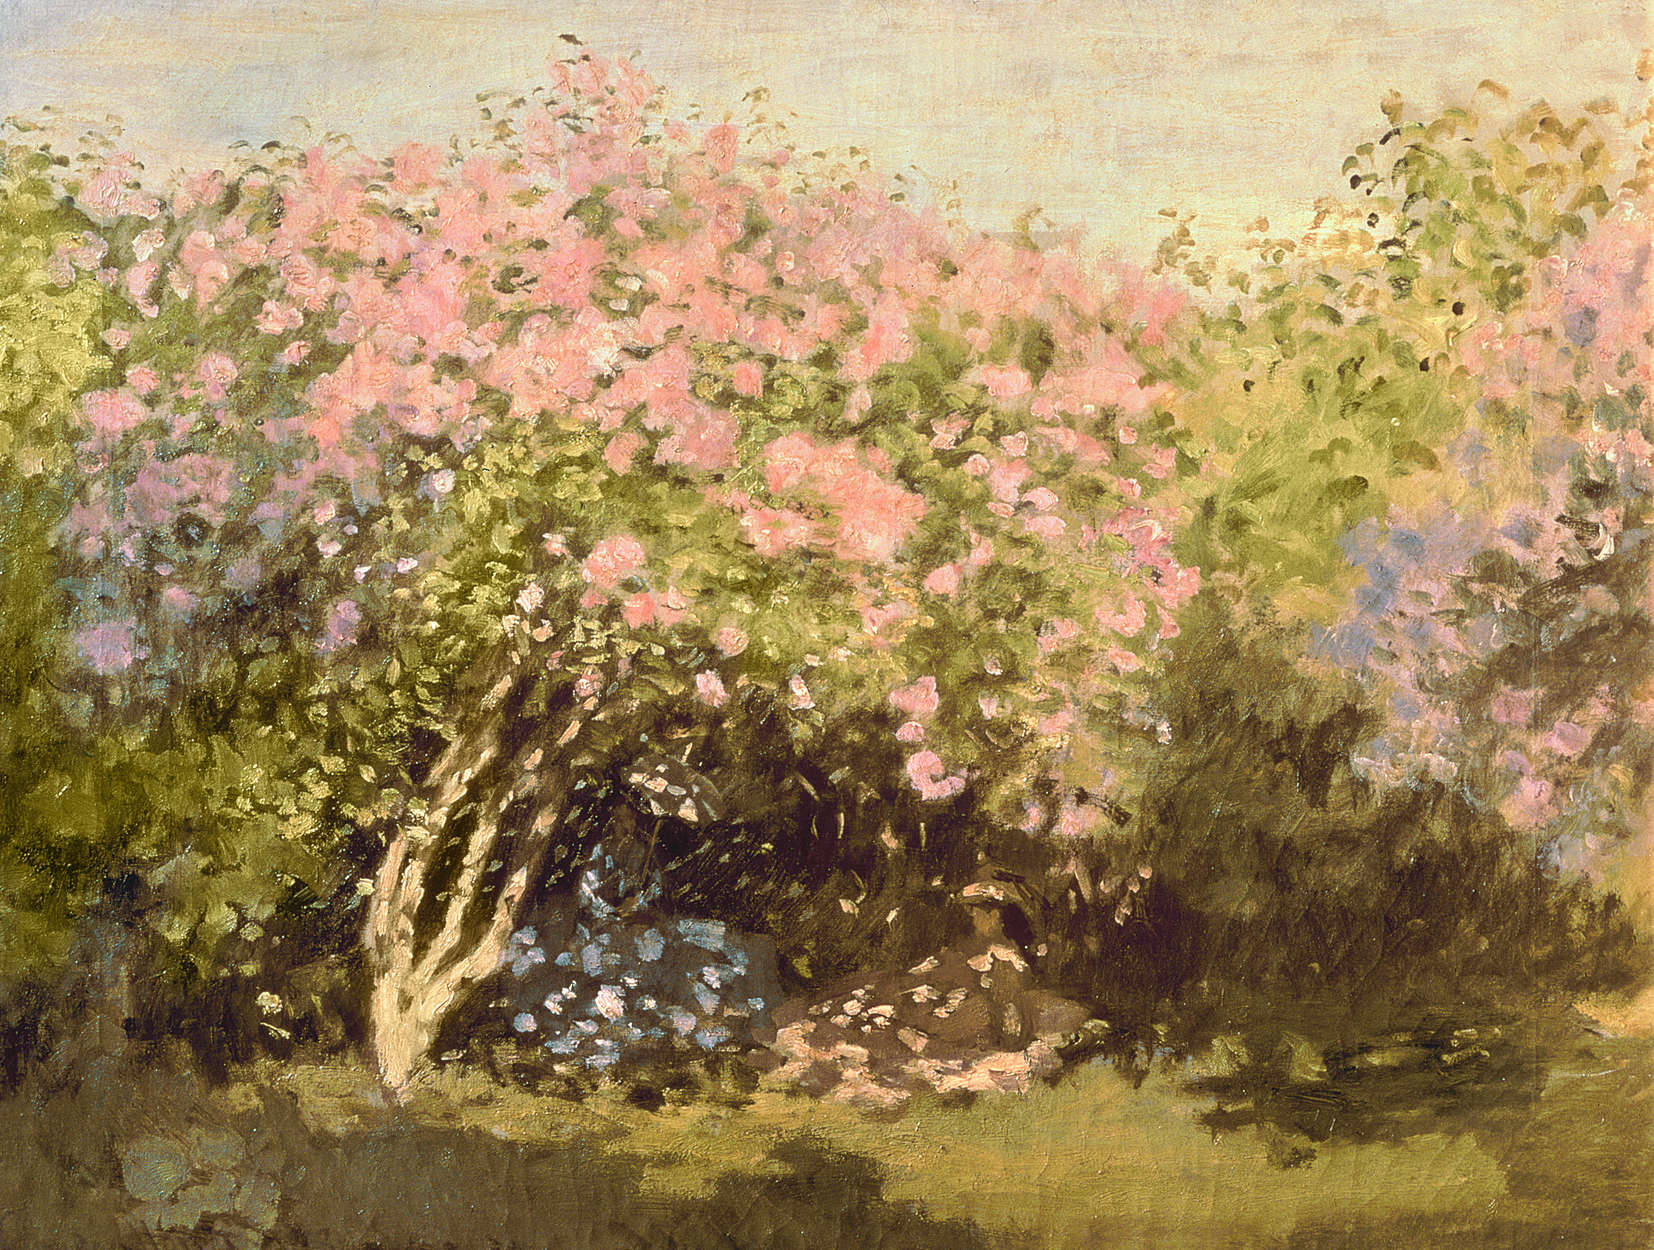             Seringen in bloei in de zon" muurschildering van Claude Monet
        